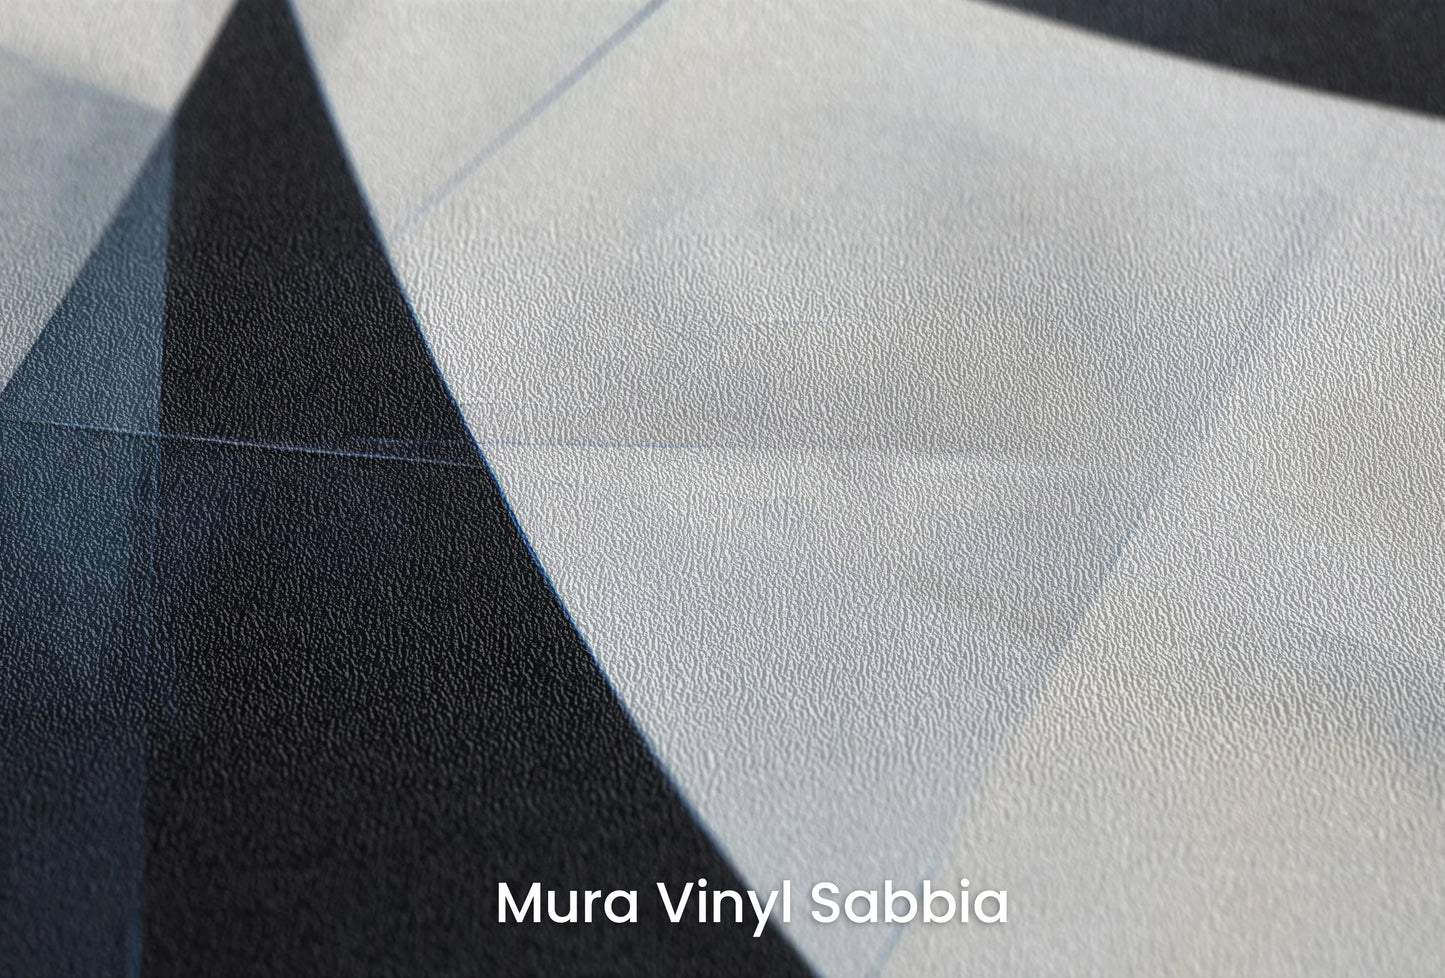 Zbliżenie na artystyczną fototapetę o nazwie Monochrome Slices na podłożu Mura Vinyl Sabbia struktura grubego ziarna piasku.